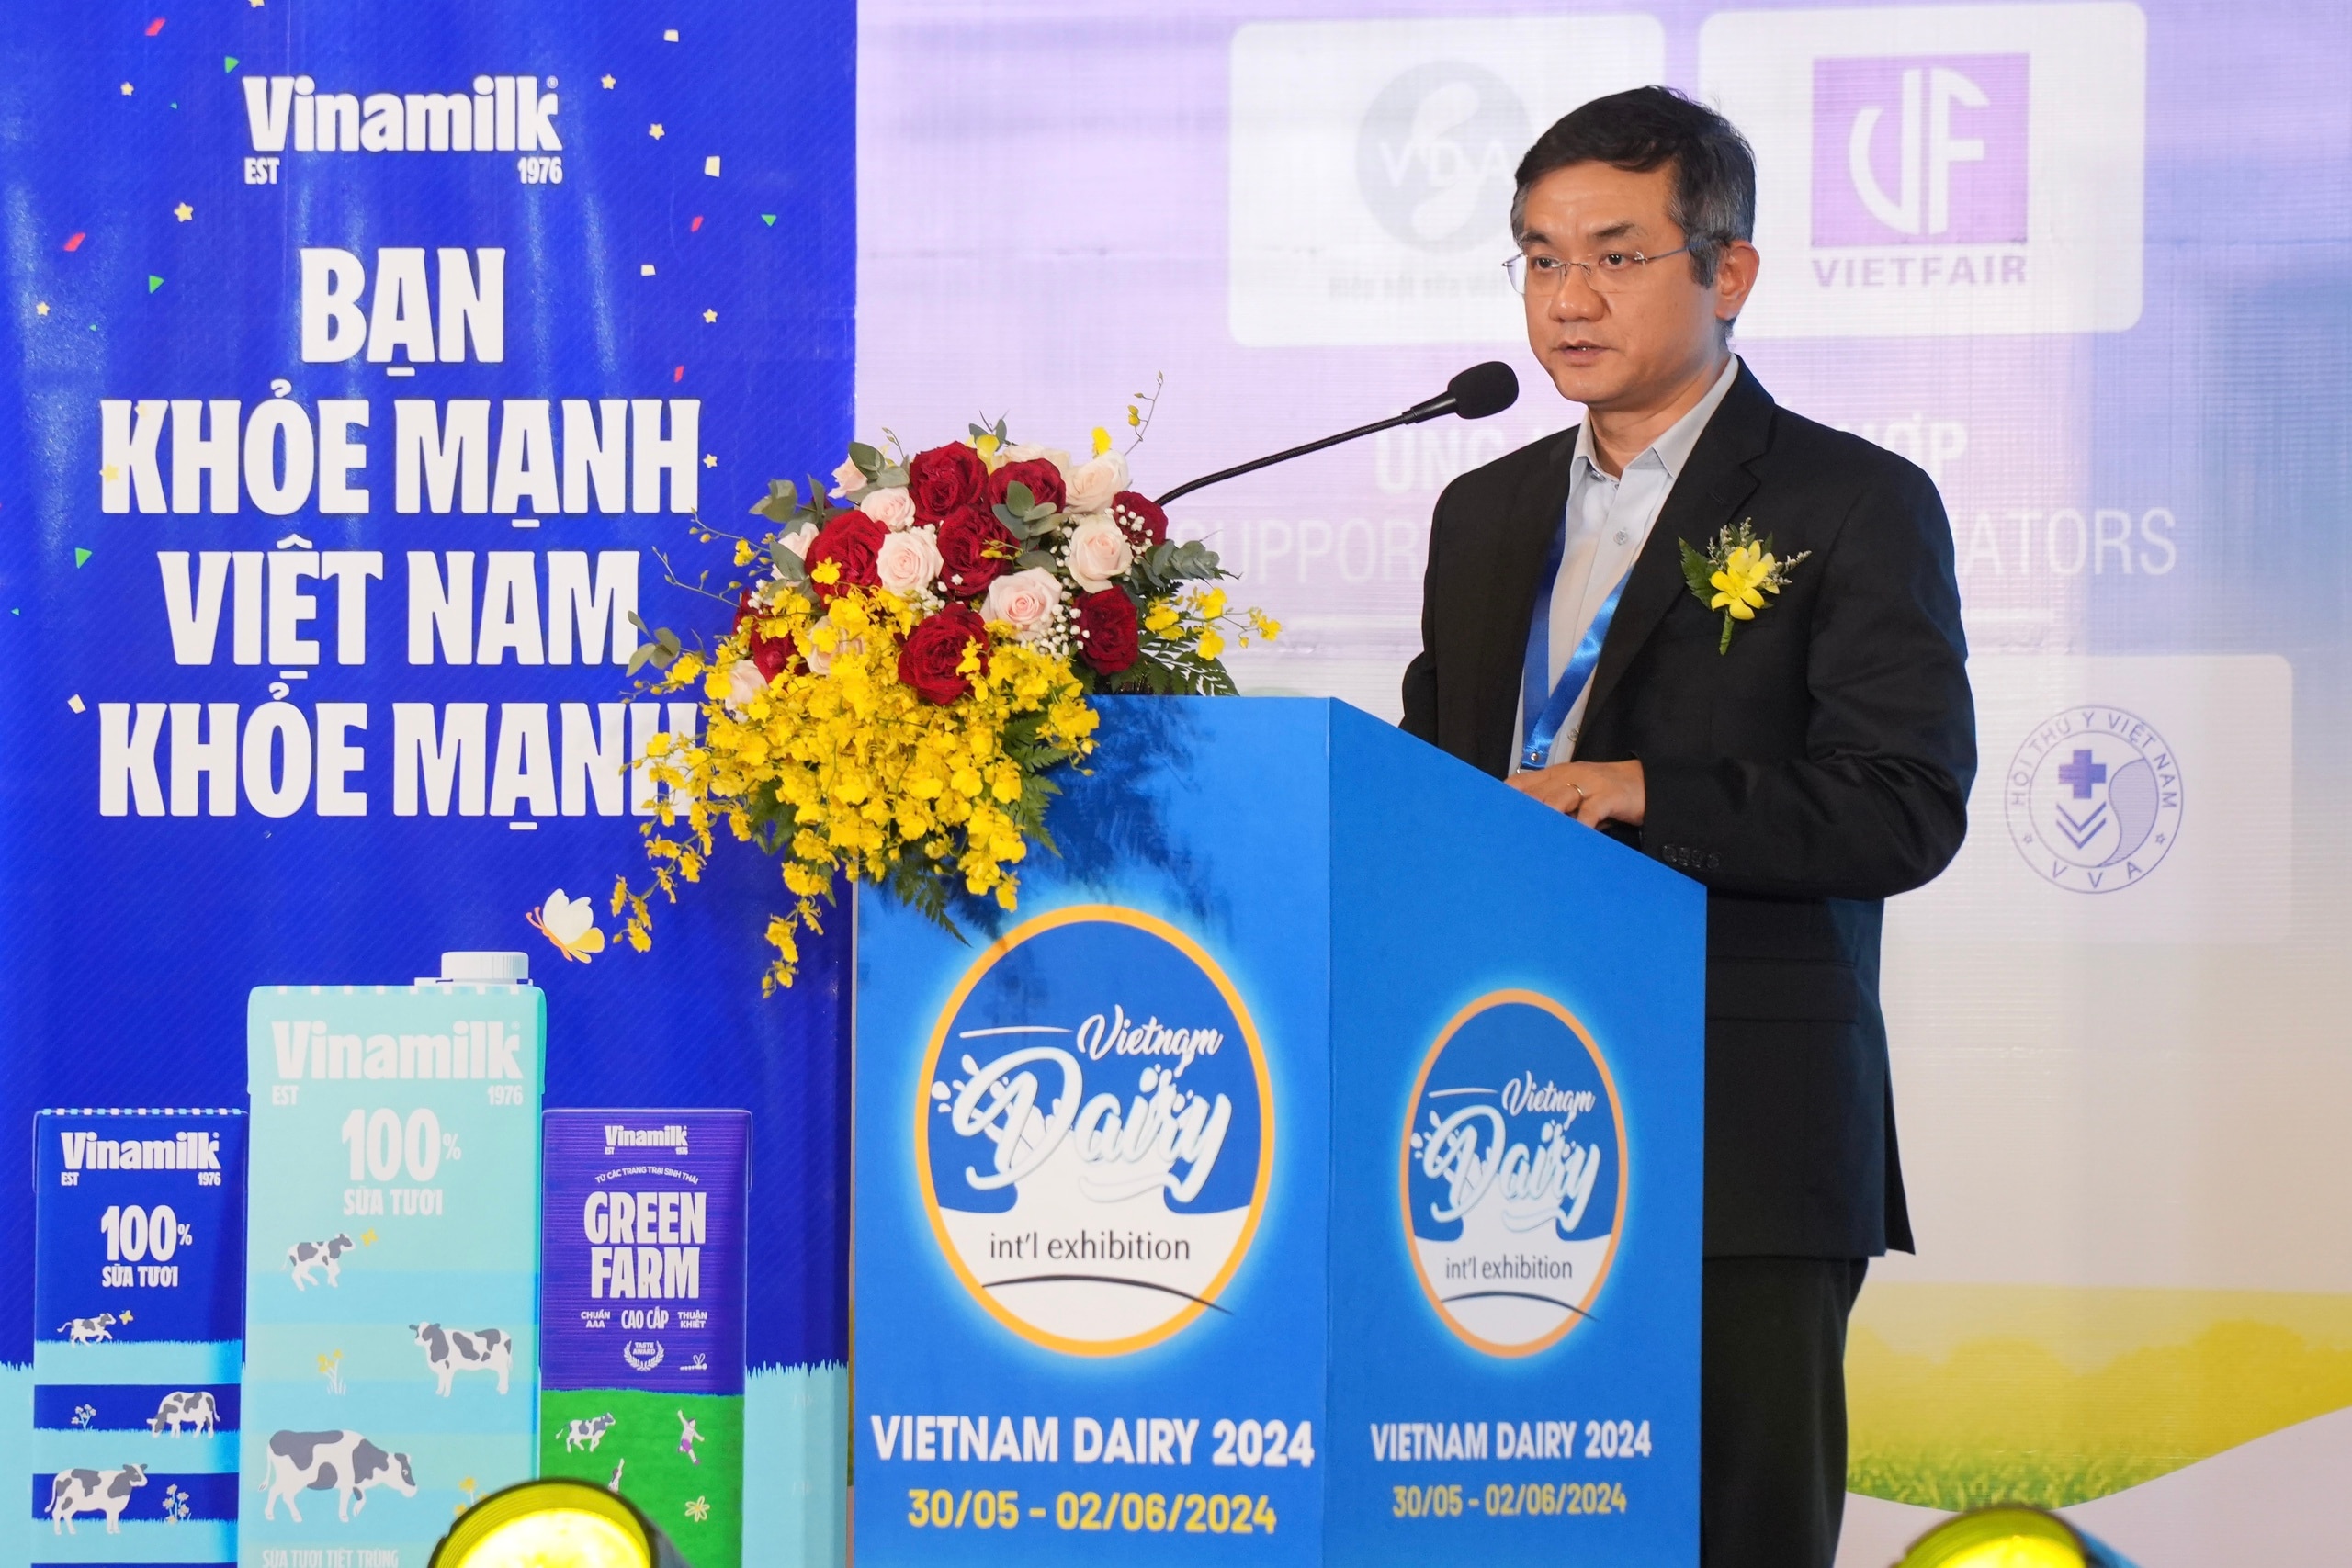 Sức hút của Vinamilk tại Triển lãm quốc tế chuyên ngành sữa- Ảnh 2.